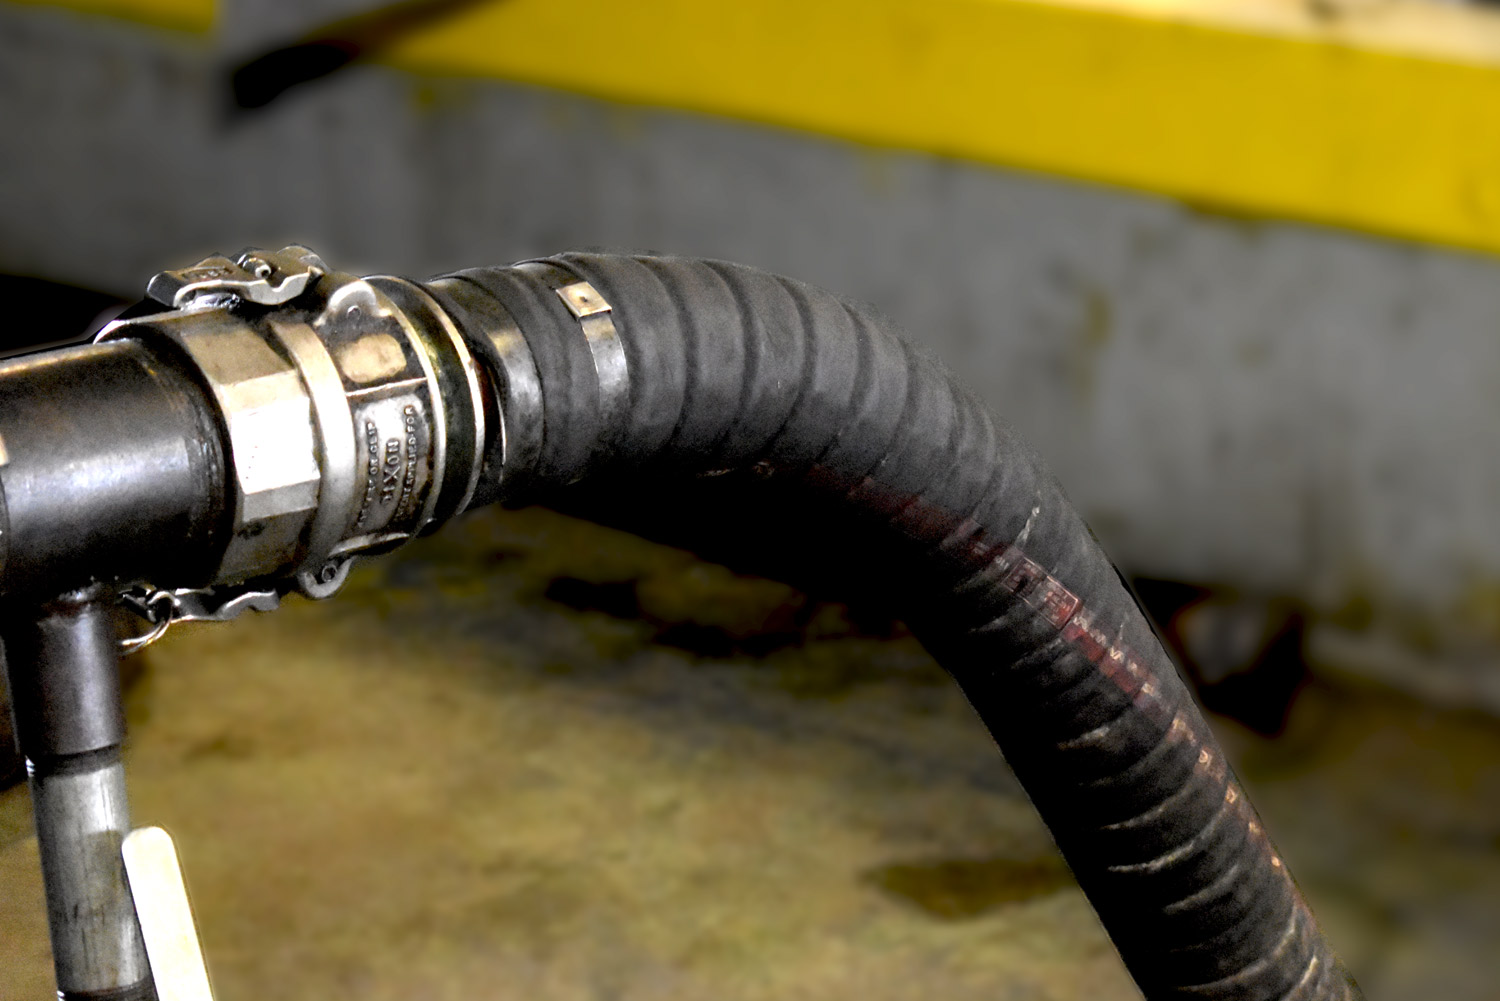 Milpaws Equipment Rental hose exapmle